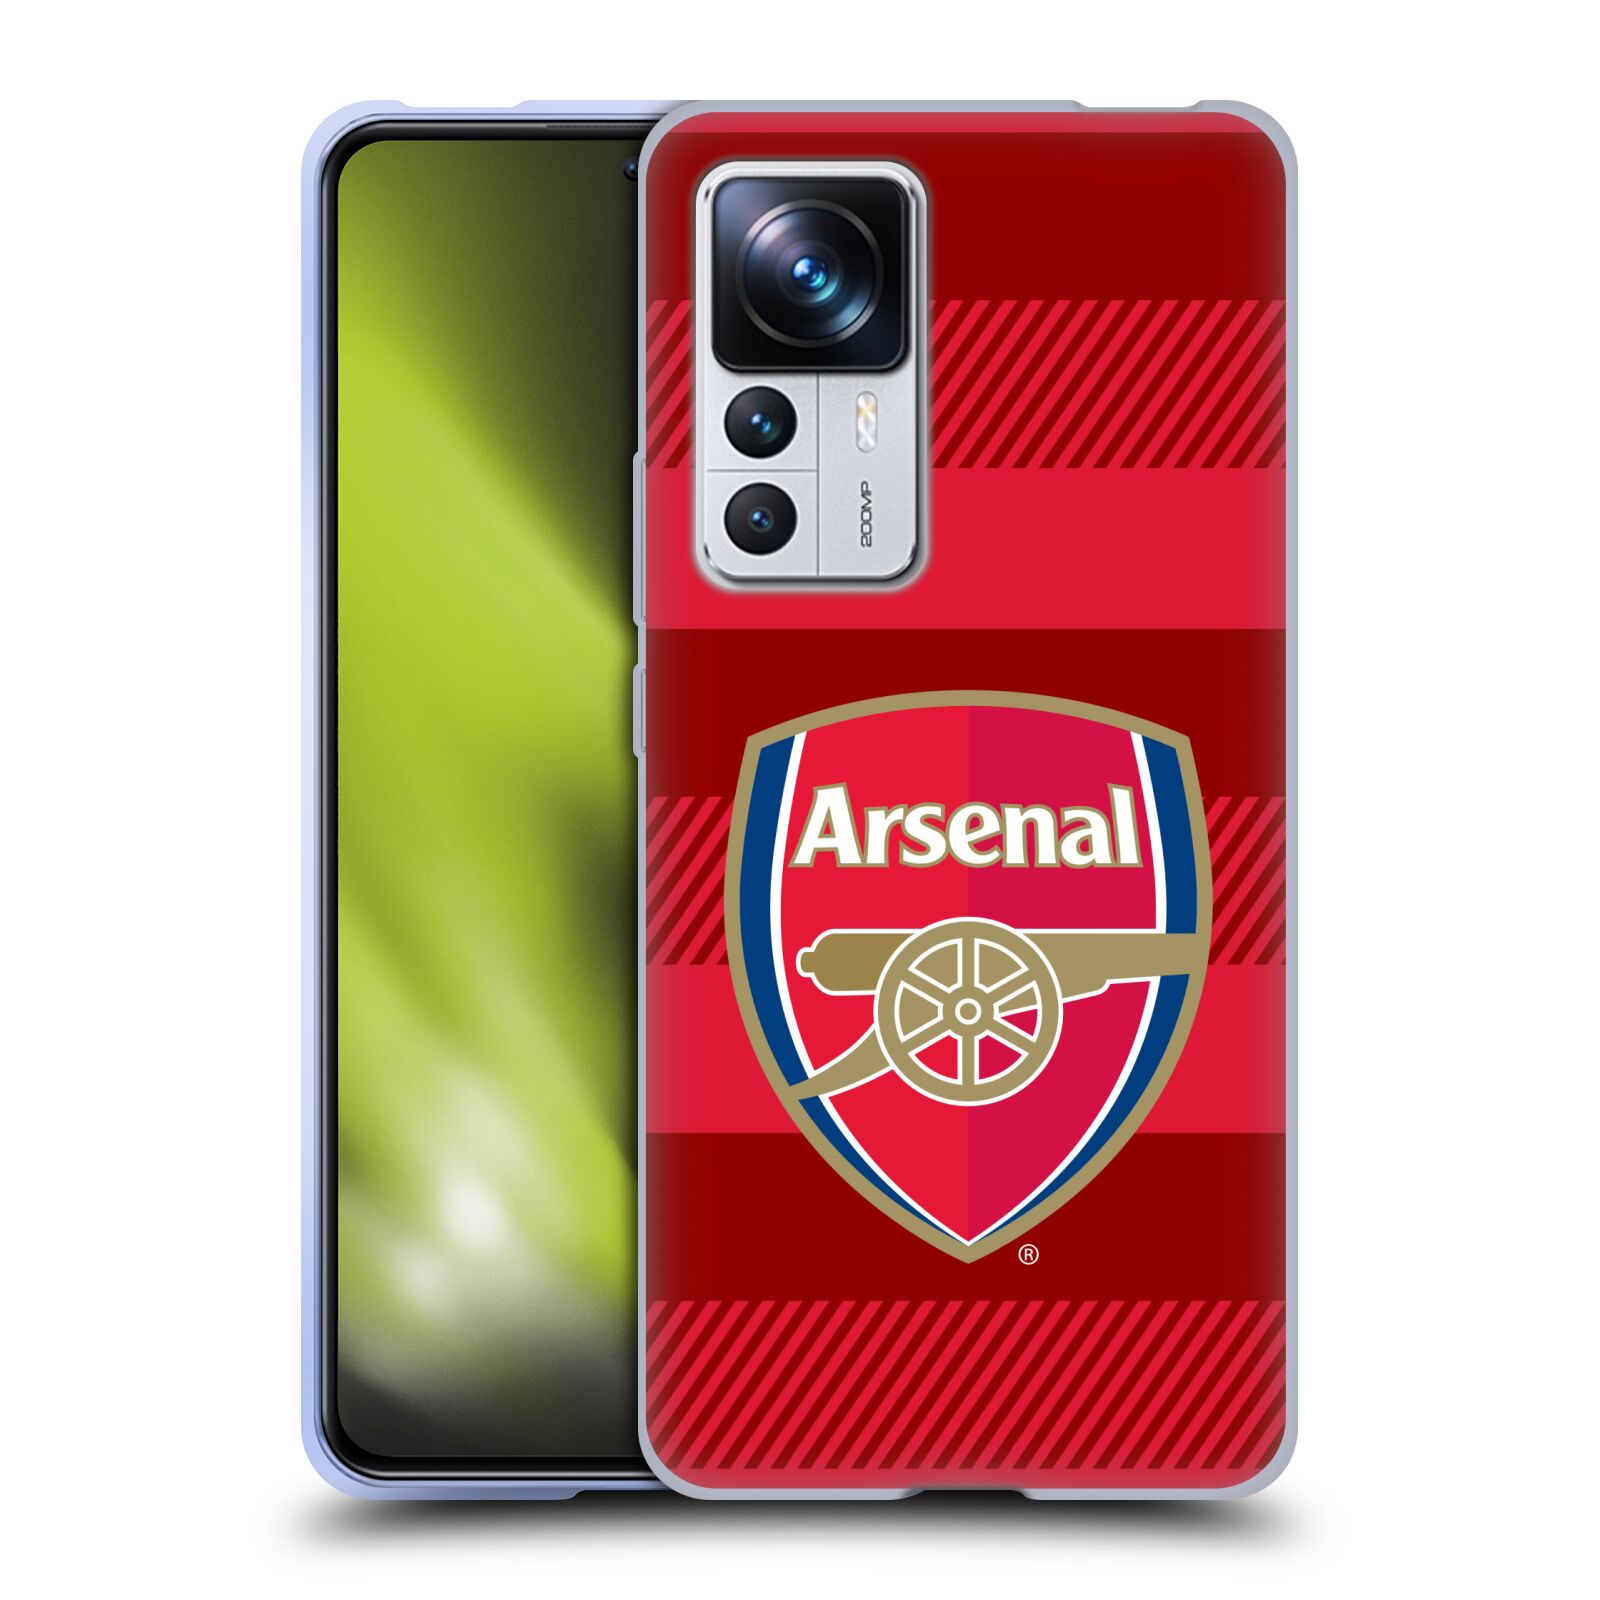 Silikonové pouzdro na mobil Xiaomi 12T / 12T Pro - Head Case - Arsenal FC - Logo s pruhy (Silikonový kryt, obal, pouzdro na mobilní telefon s motivem klubu Arsenal FC - Logo s pruhy pro Xiaomi 12T / 12T Pro)